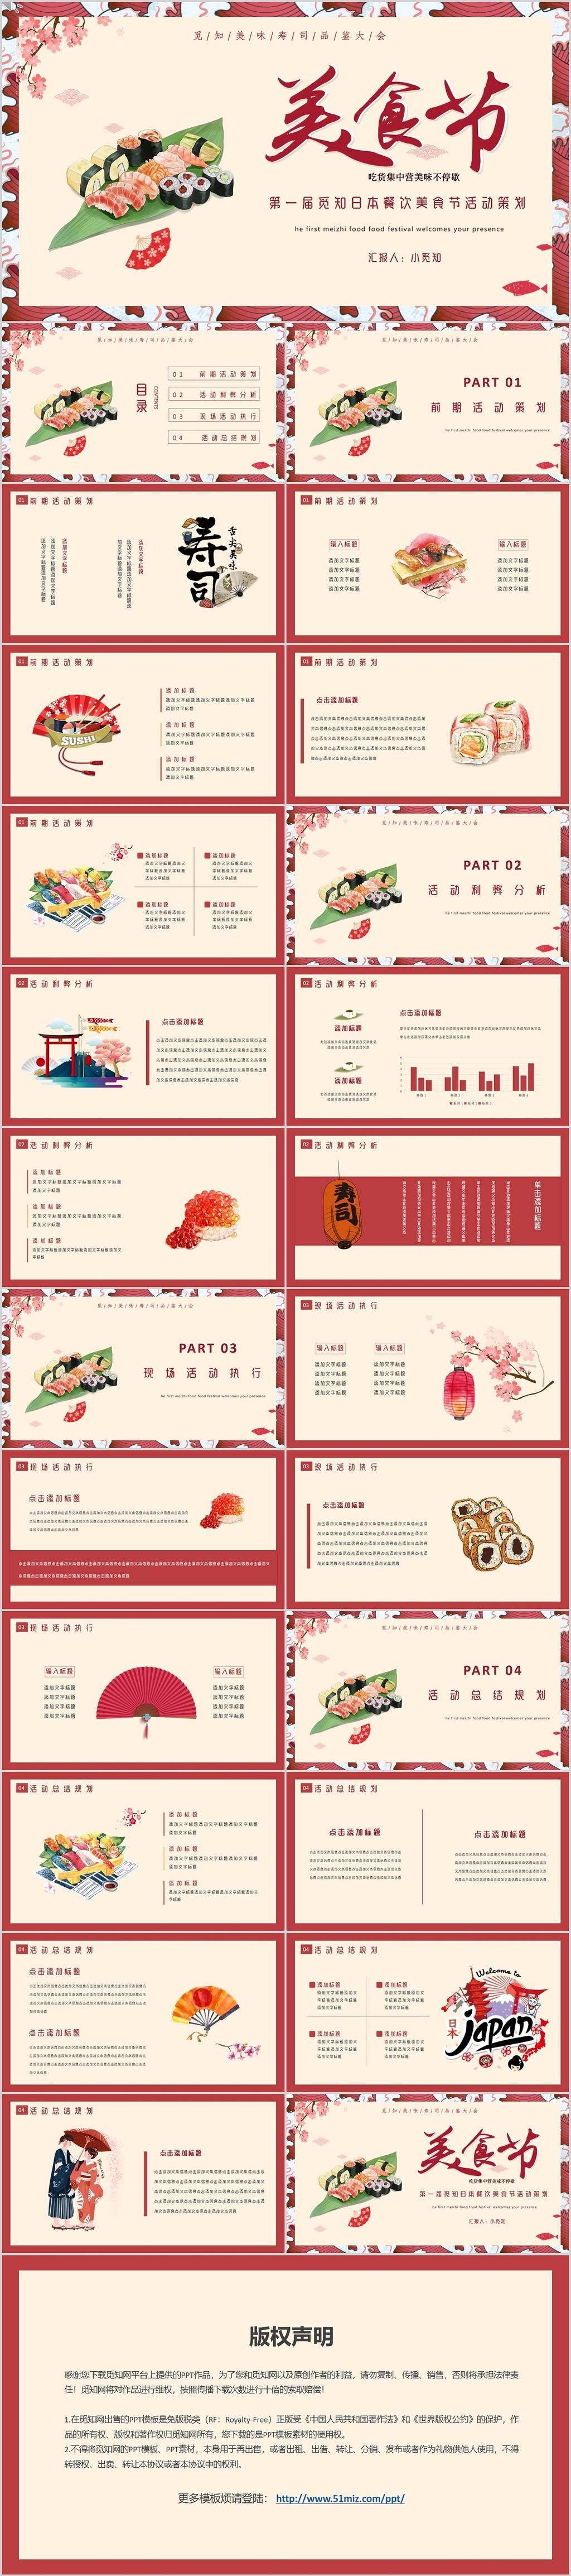 红色简约插画日本餐饮美食节活动策划PPT模板